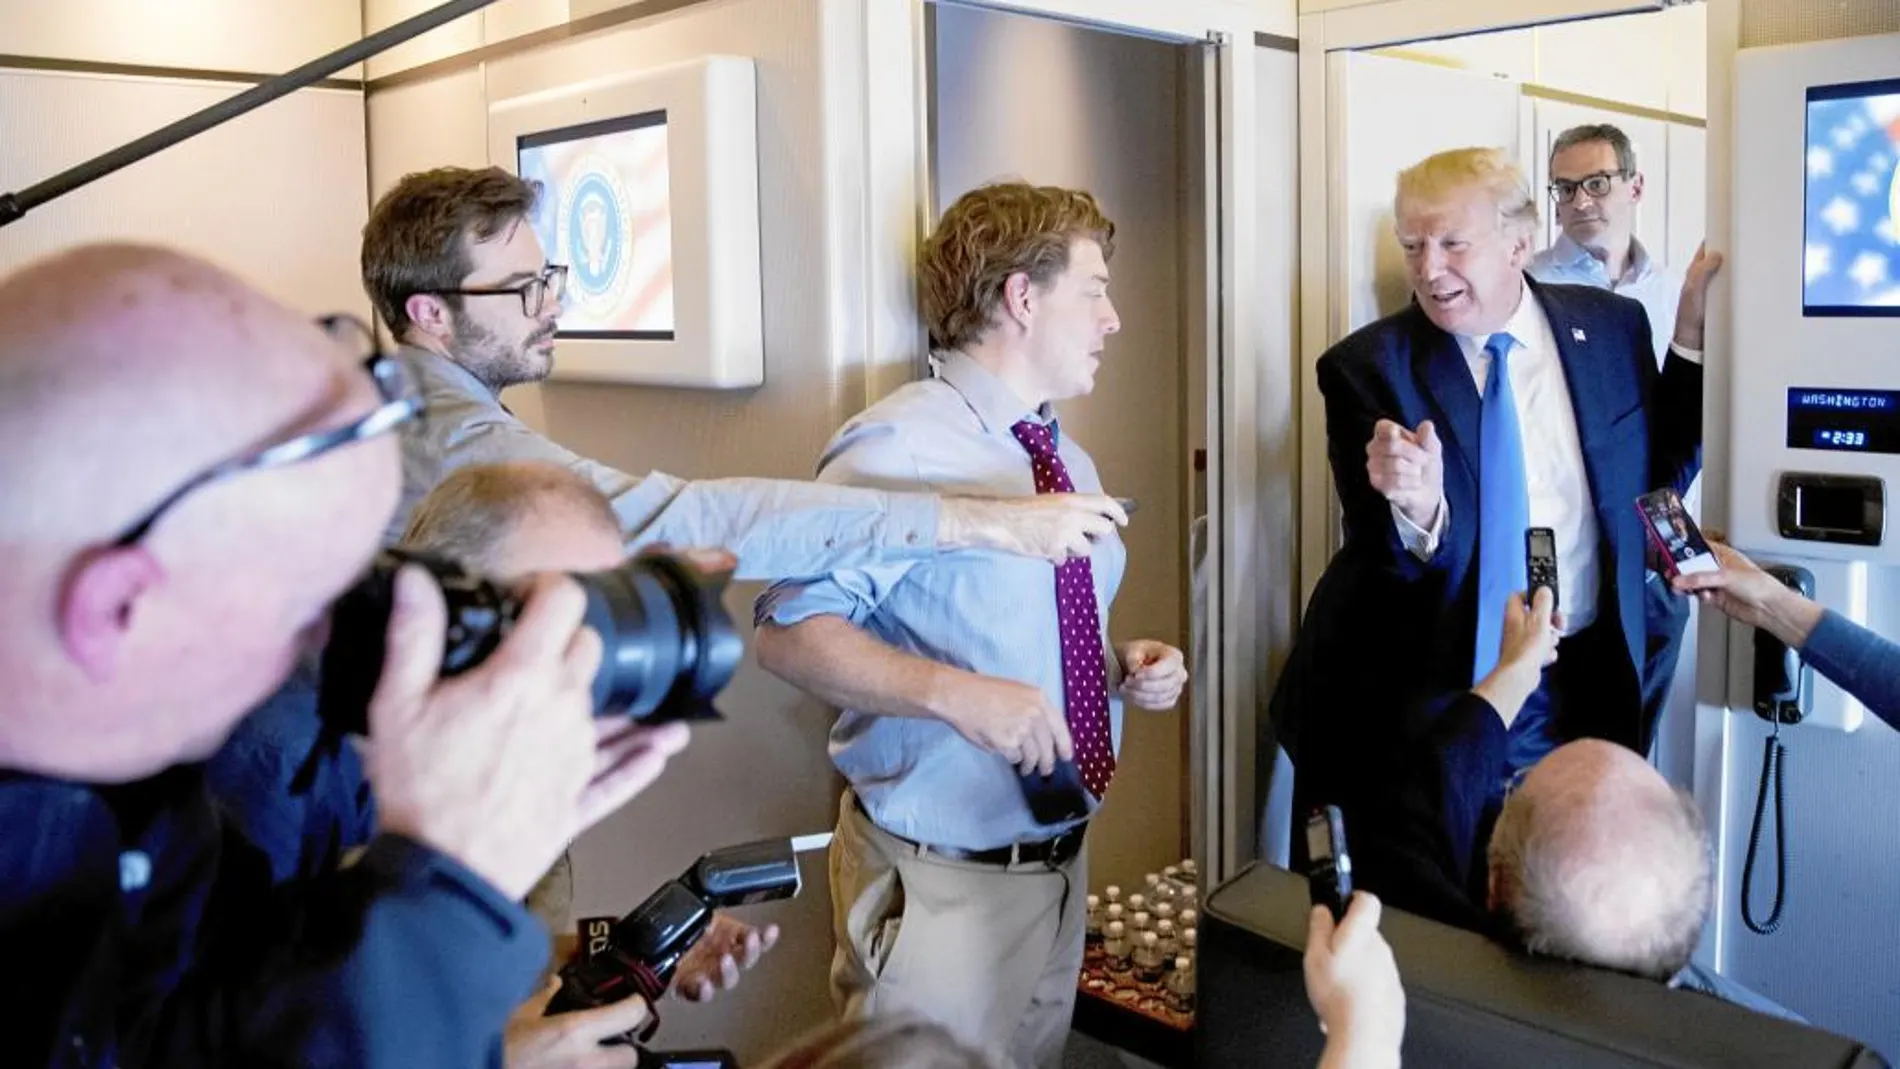 El presidente Donald Trump responde las preguntas de los periodistas en el aeropuerto de Manila antes de regresar a EE UU de su gira asiática